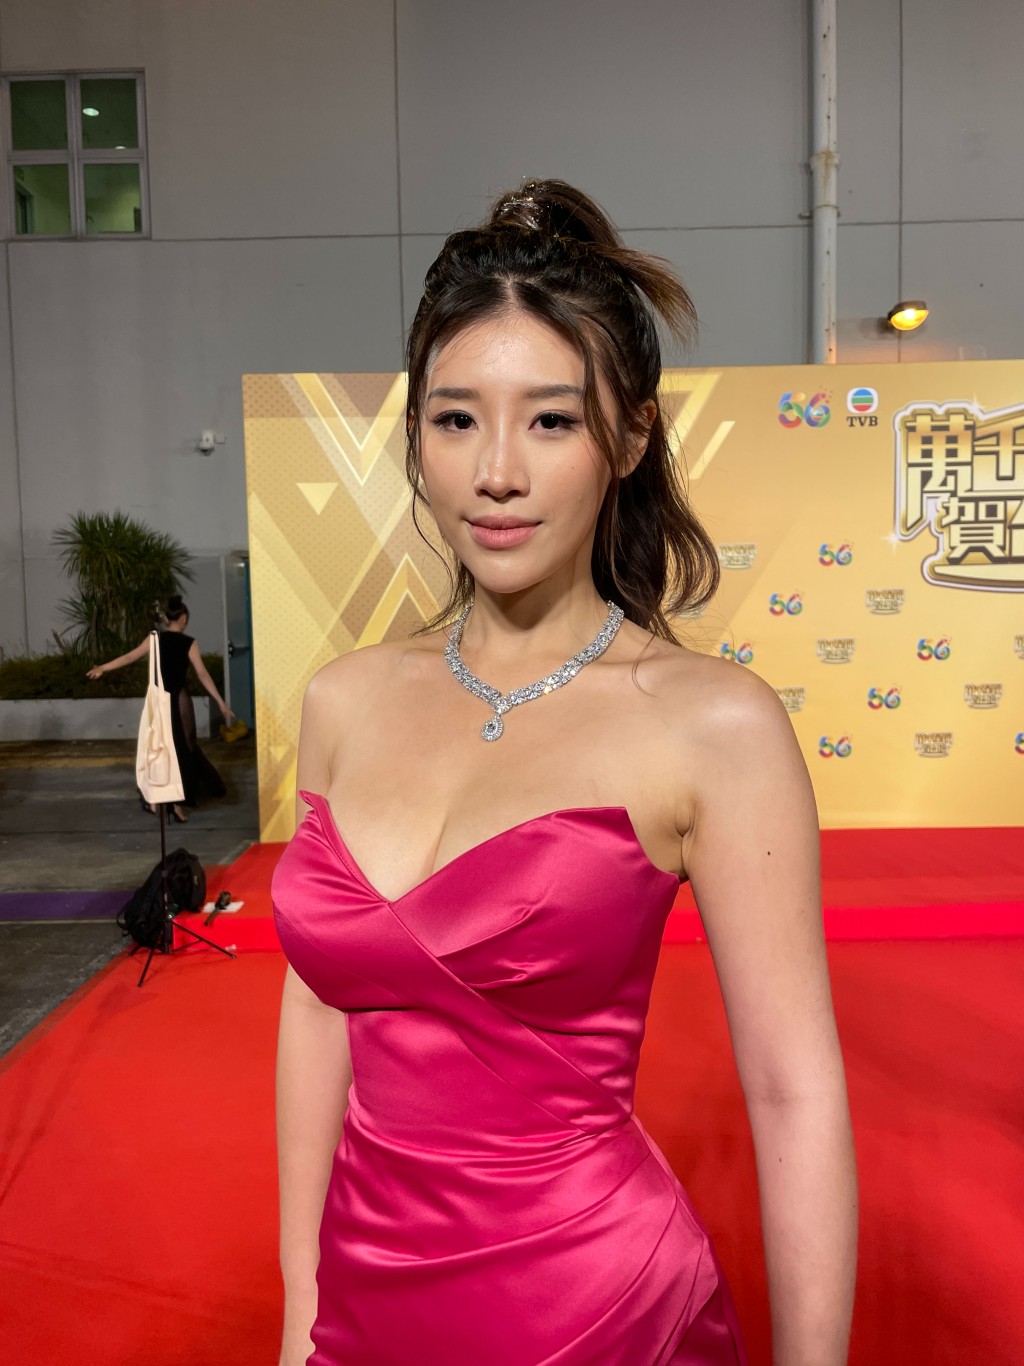 郭佩文早前一身桃红晚装超低胸兼开高衩出席TVB台庆。